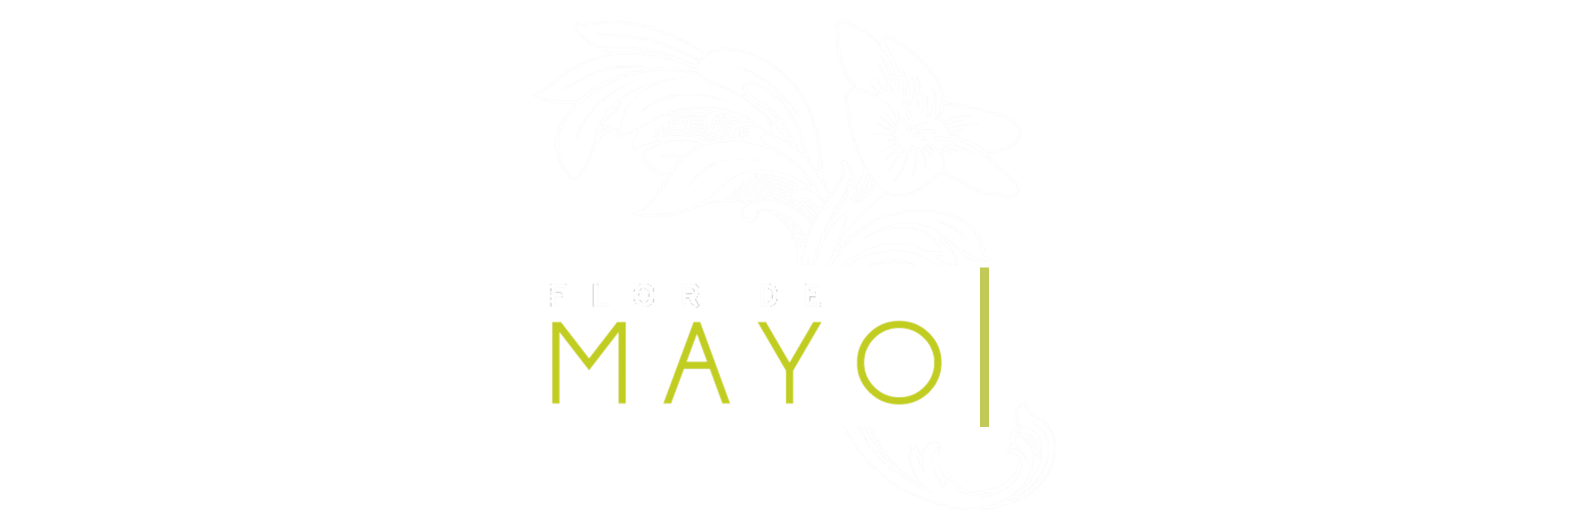 Flor de mayo